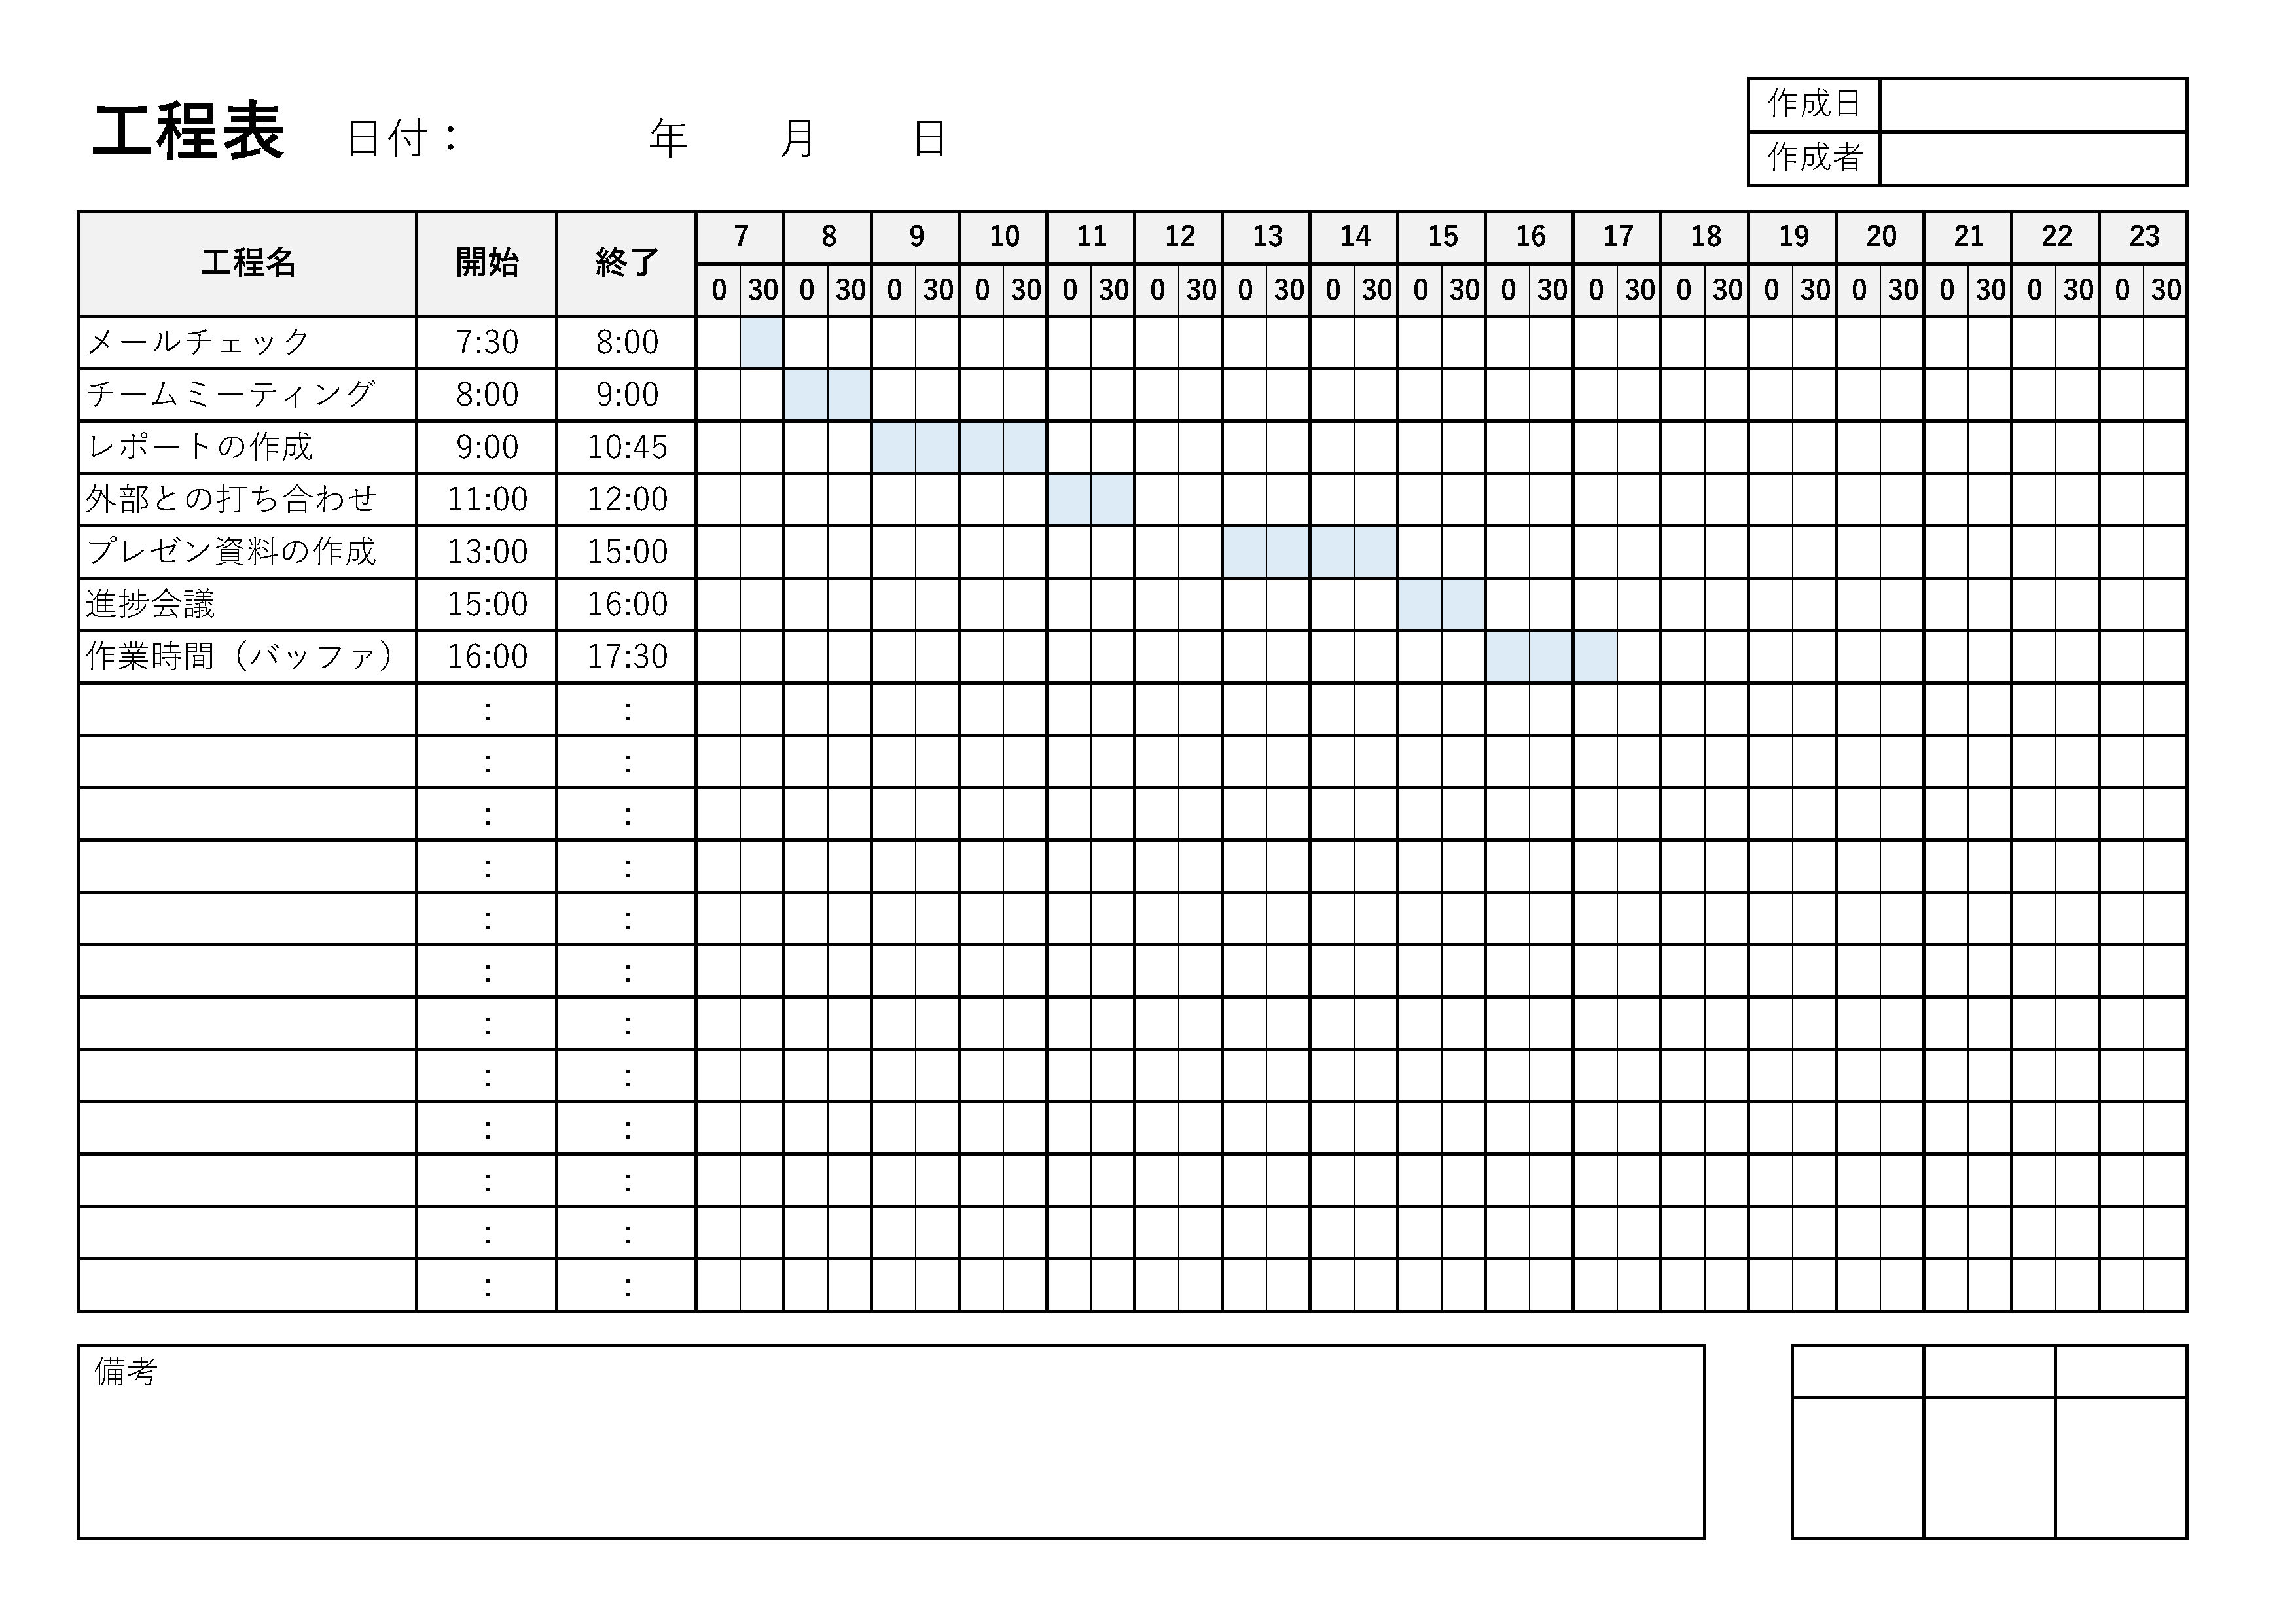 1日のスケジュールを時刻ごとに分けられたリスト形式の工程表